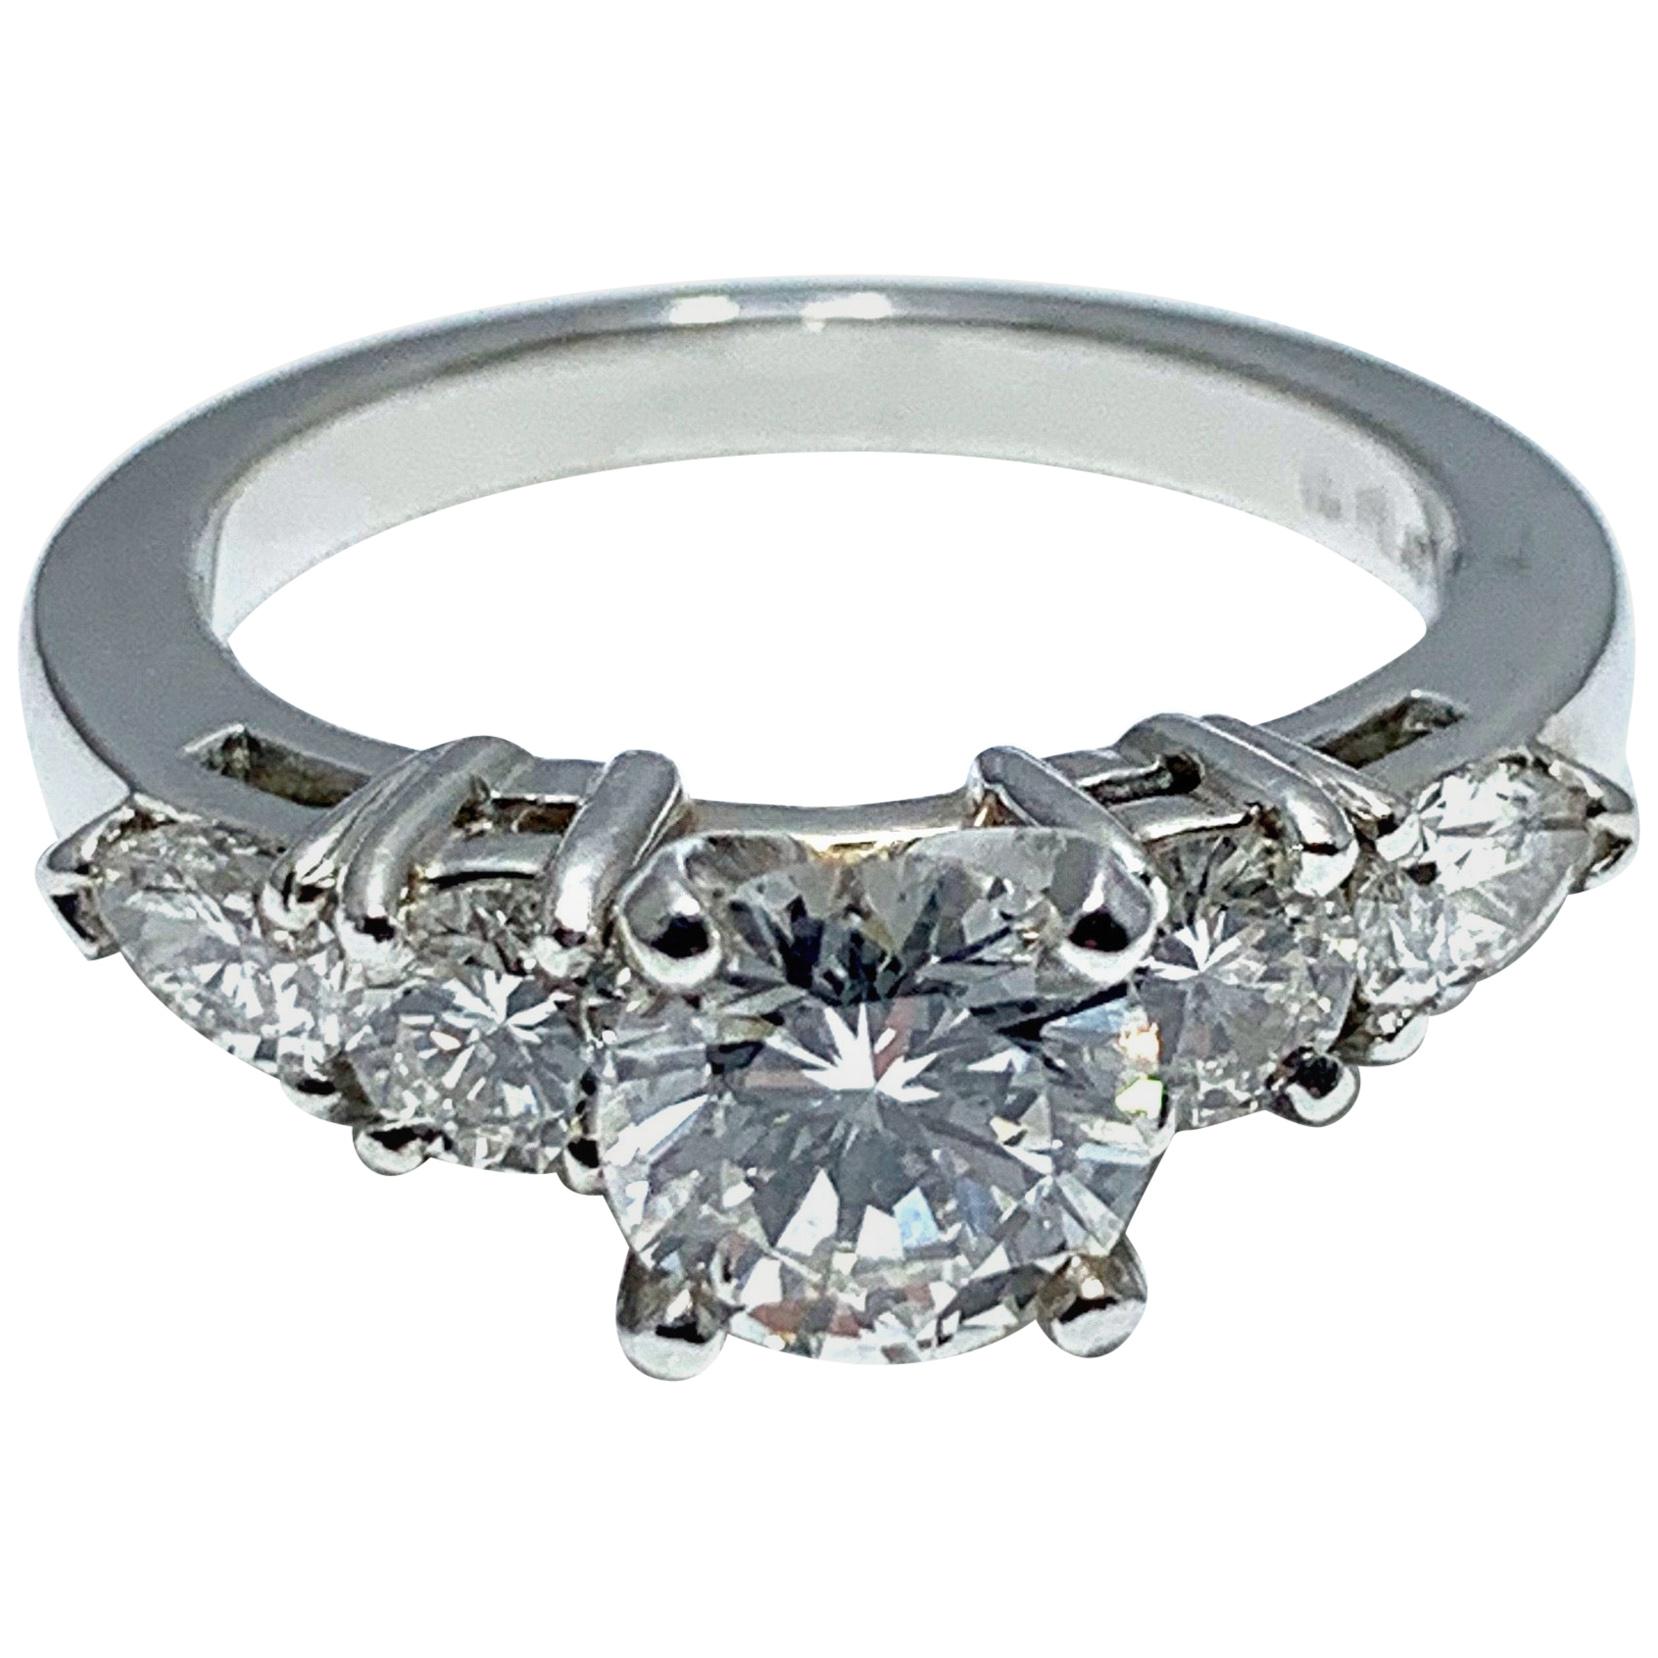 1.05 Carat Round Brilliant Cut Diamond and Platinum Engagement Ring